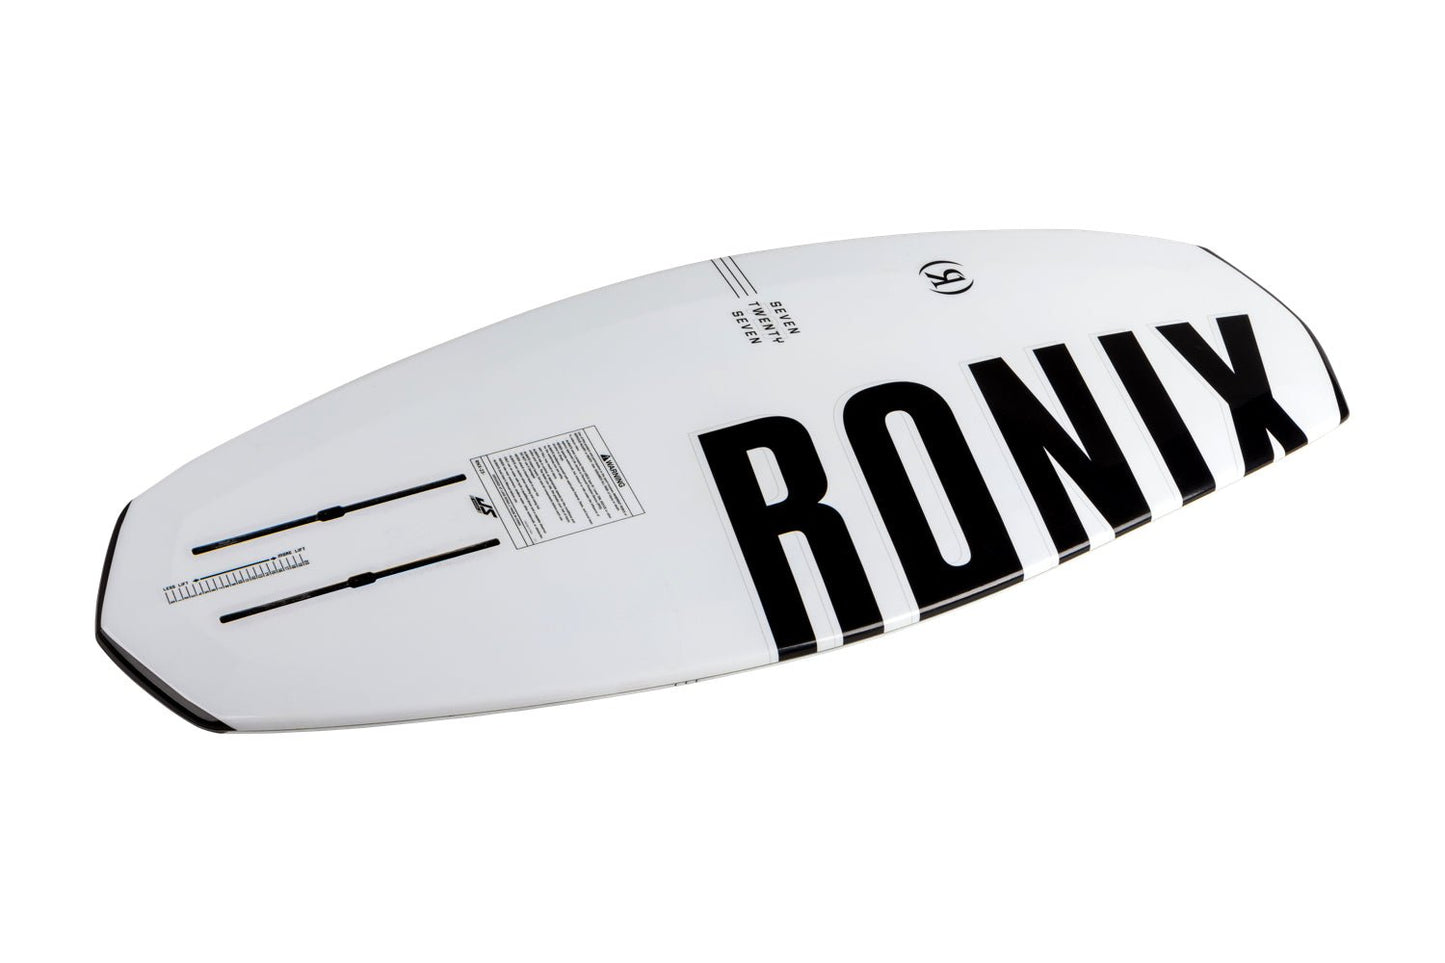 2023 KOAL SURFACE 727 FOIL BOARD W/STRAPS -Ronix232470-White-4 1